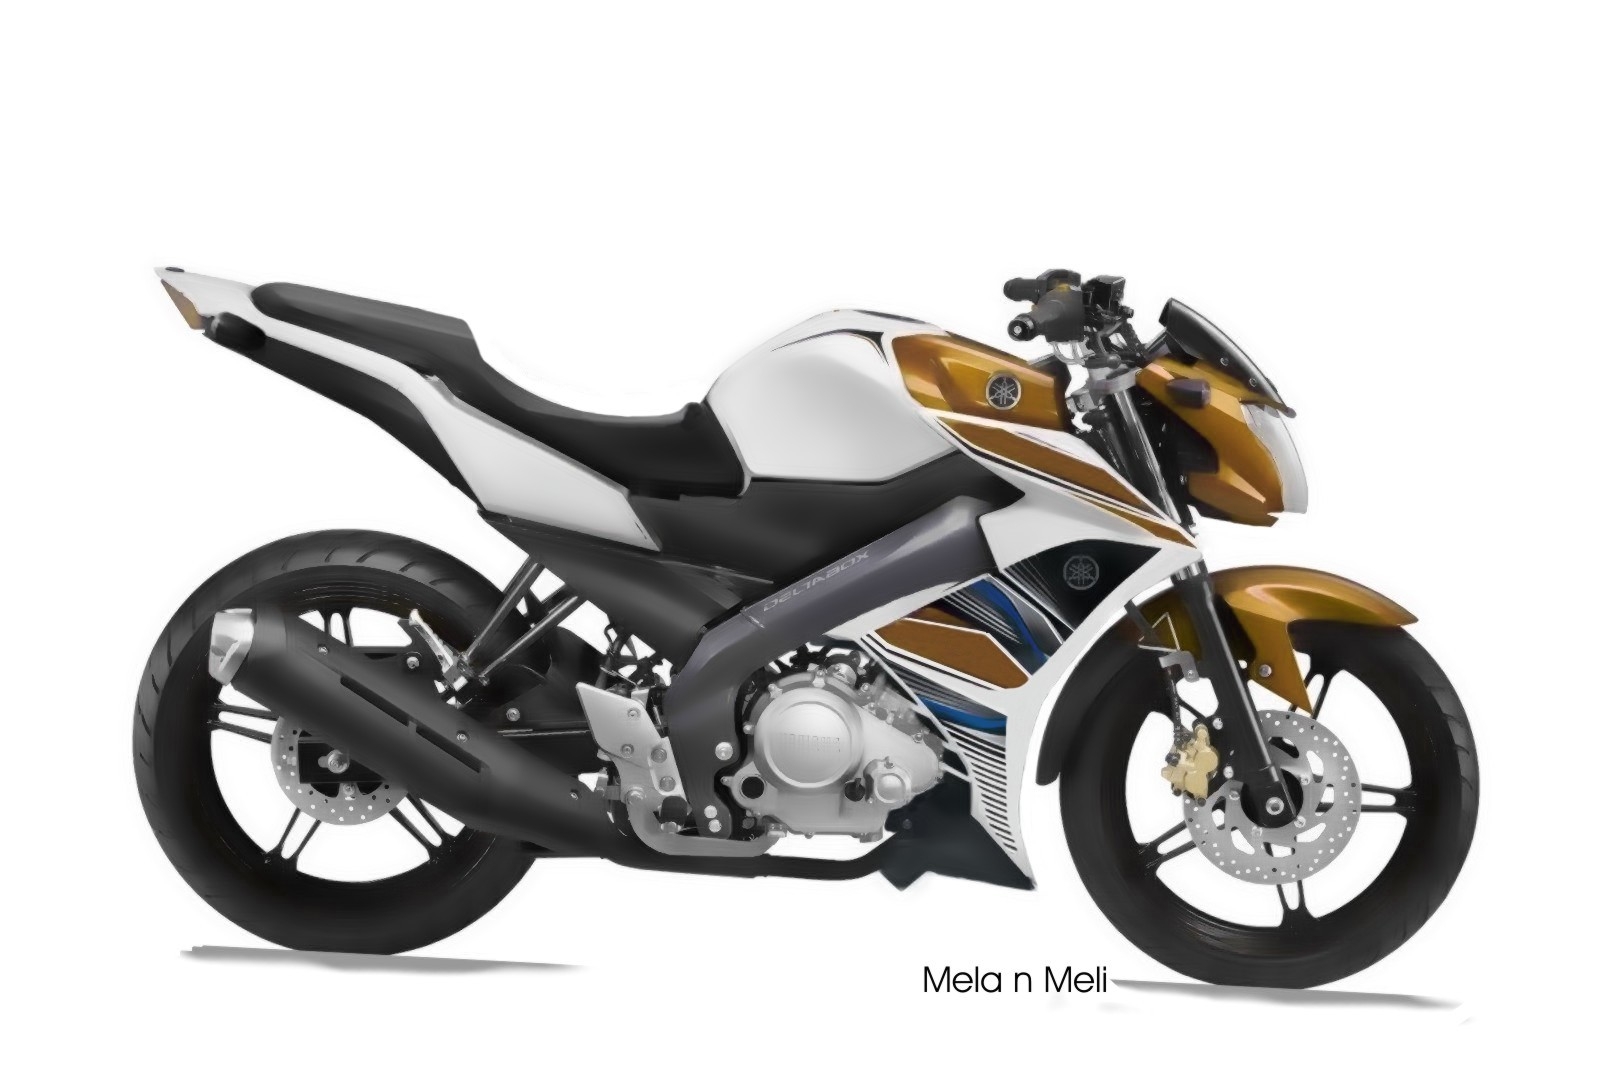 Gambar Modifikasi Motor Yamaha Vixion New 2016 Otomotify